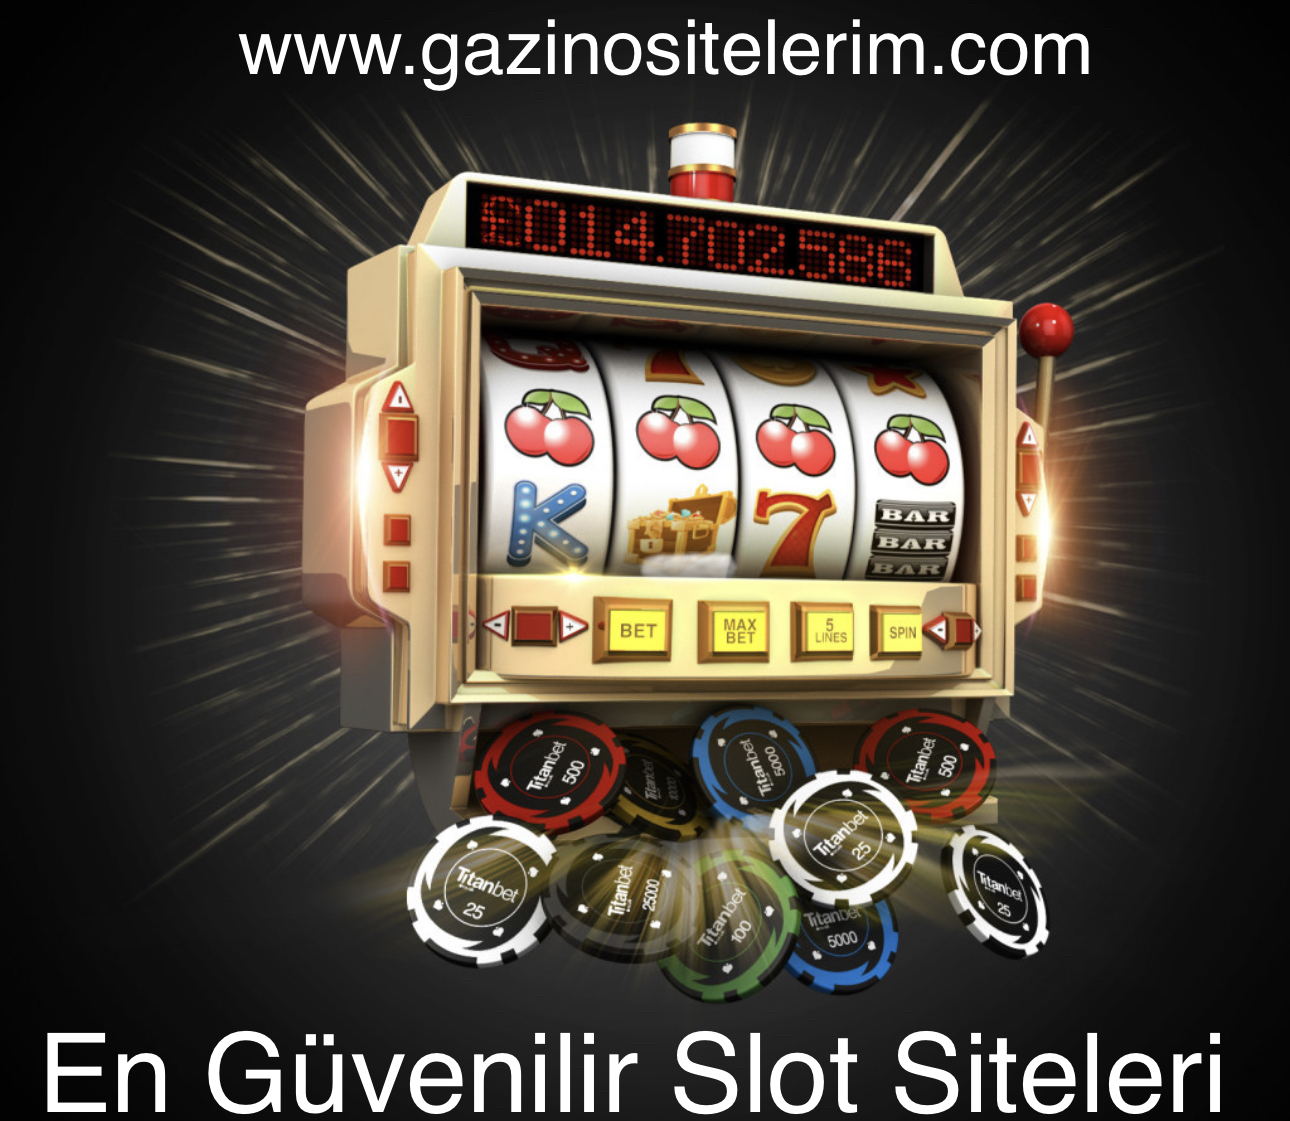 En Güvenilir Slot Siteleri www.gazinositelerim.com